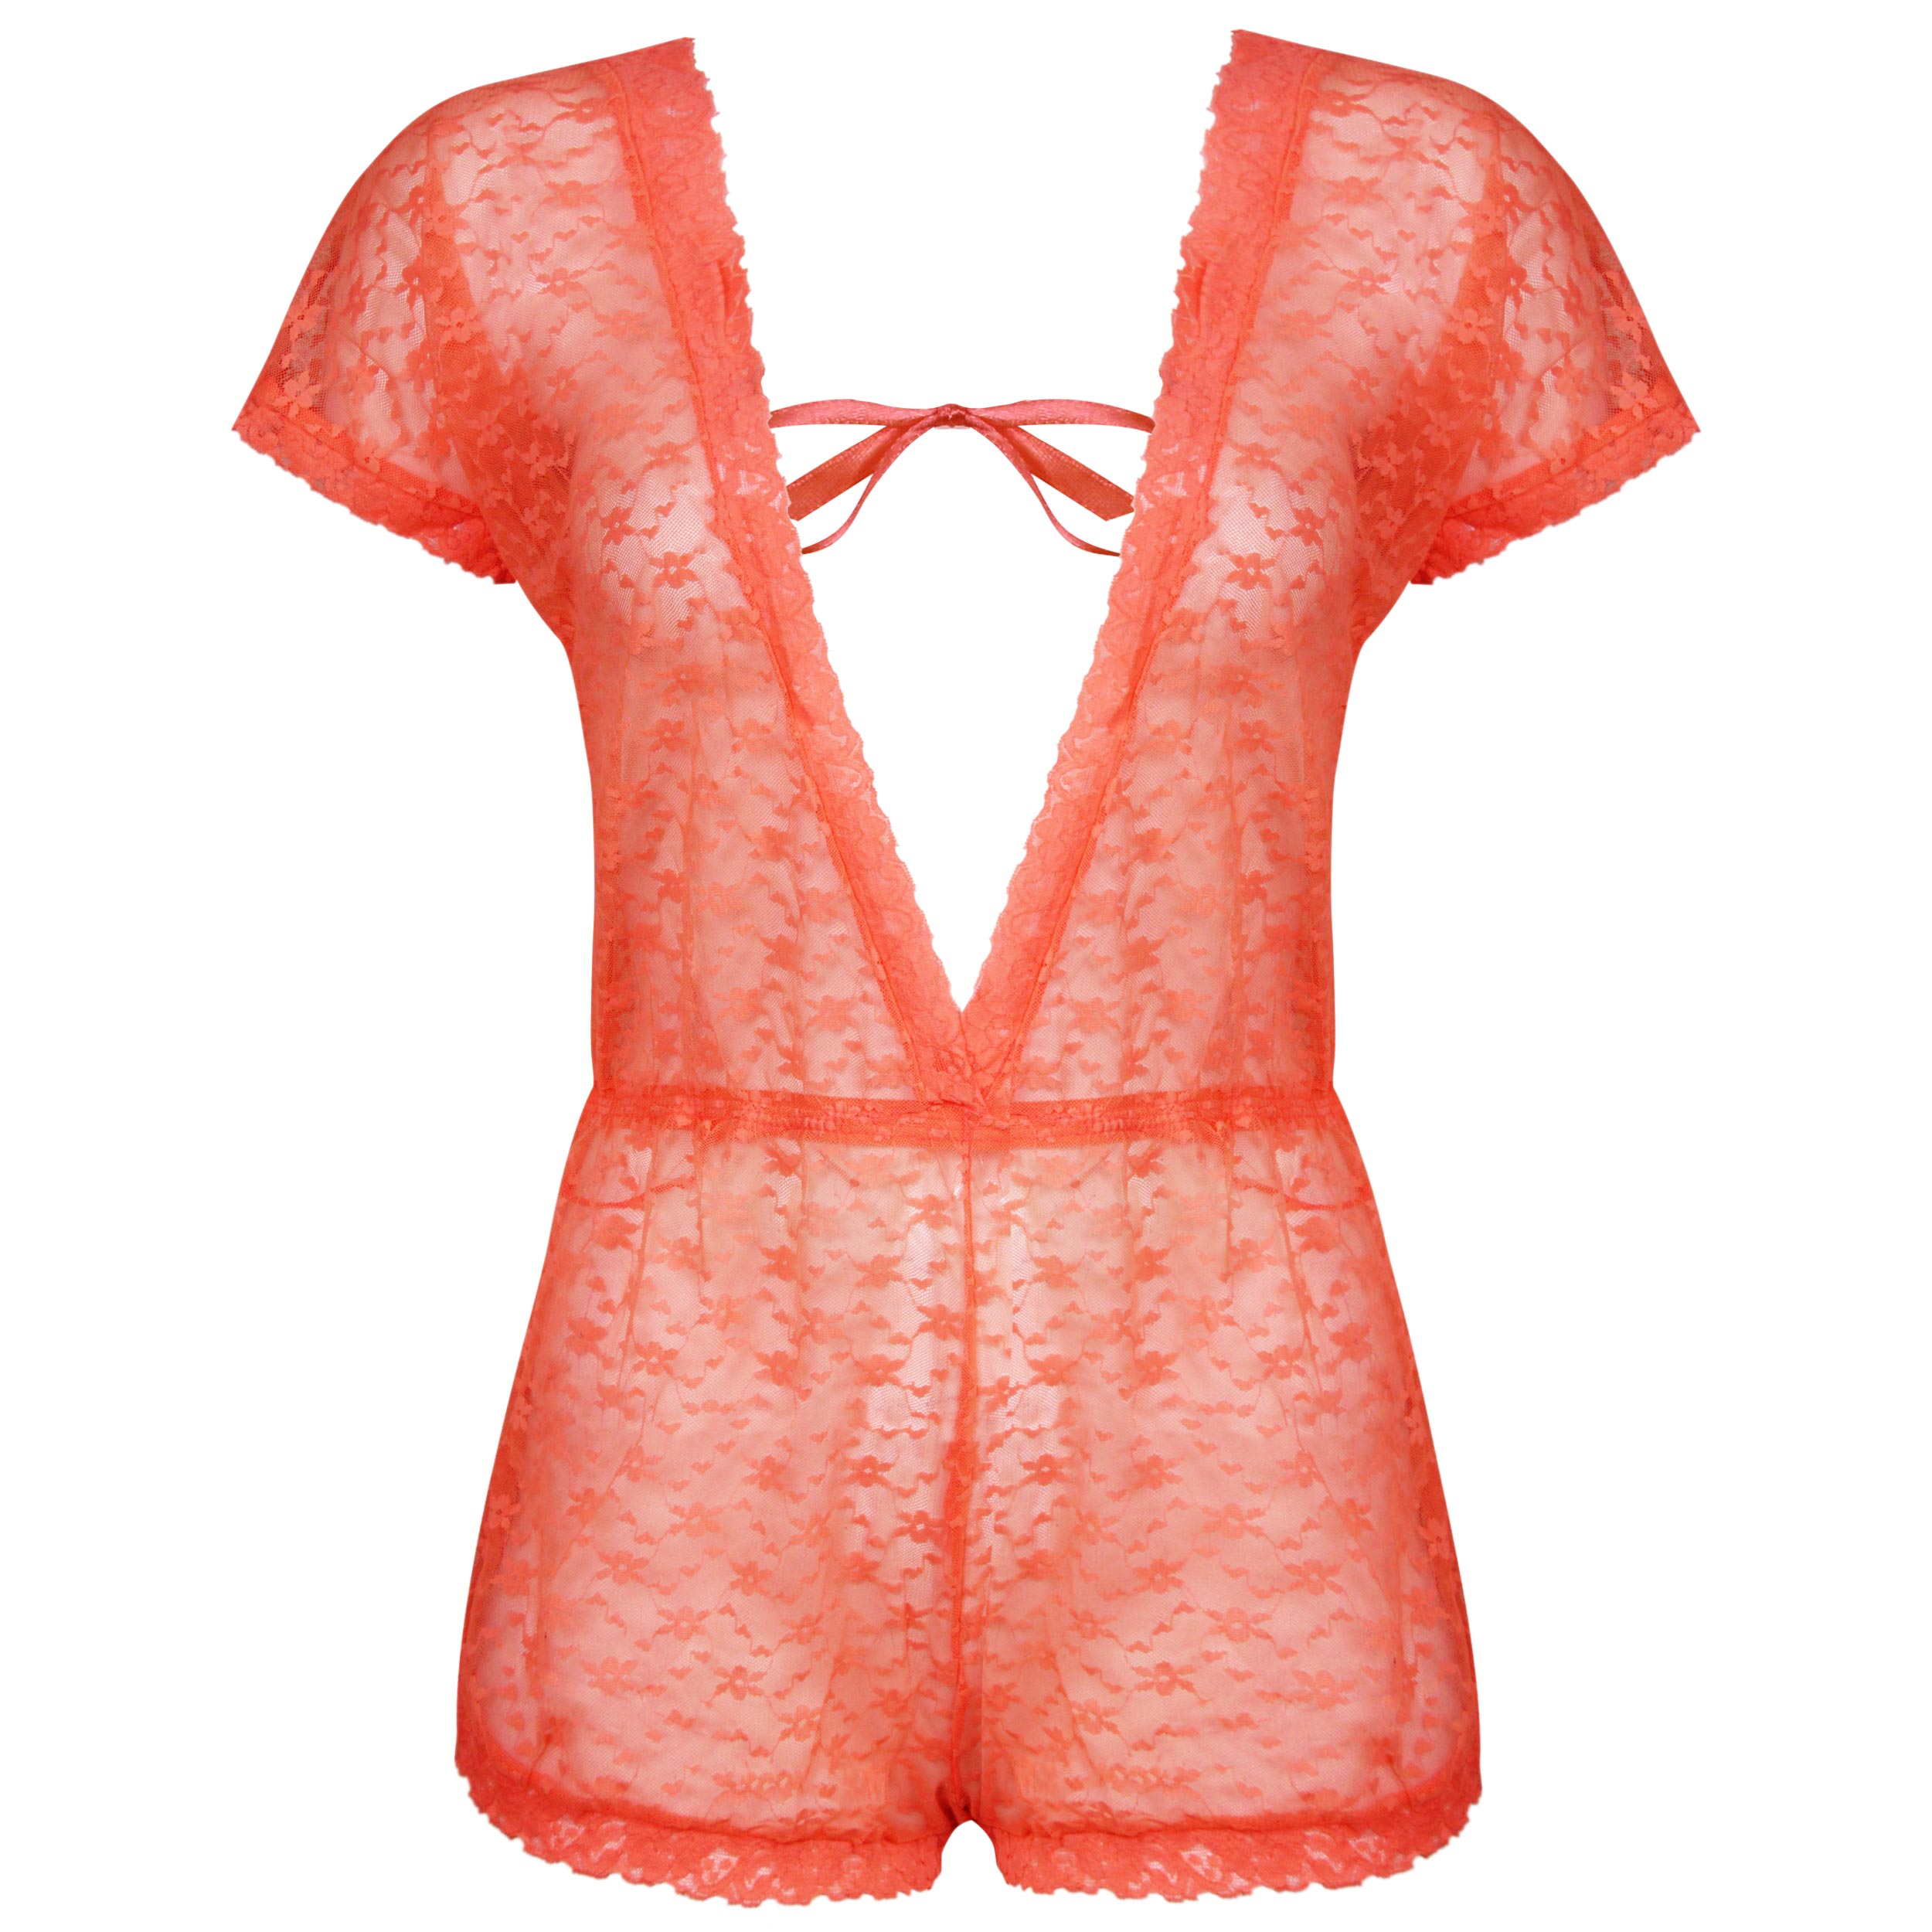 لباس خواب زنانه ماییلدا مدل گیپوری کد 4309-51004 رنگ نارنجی